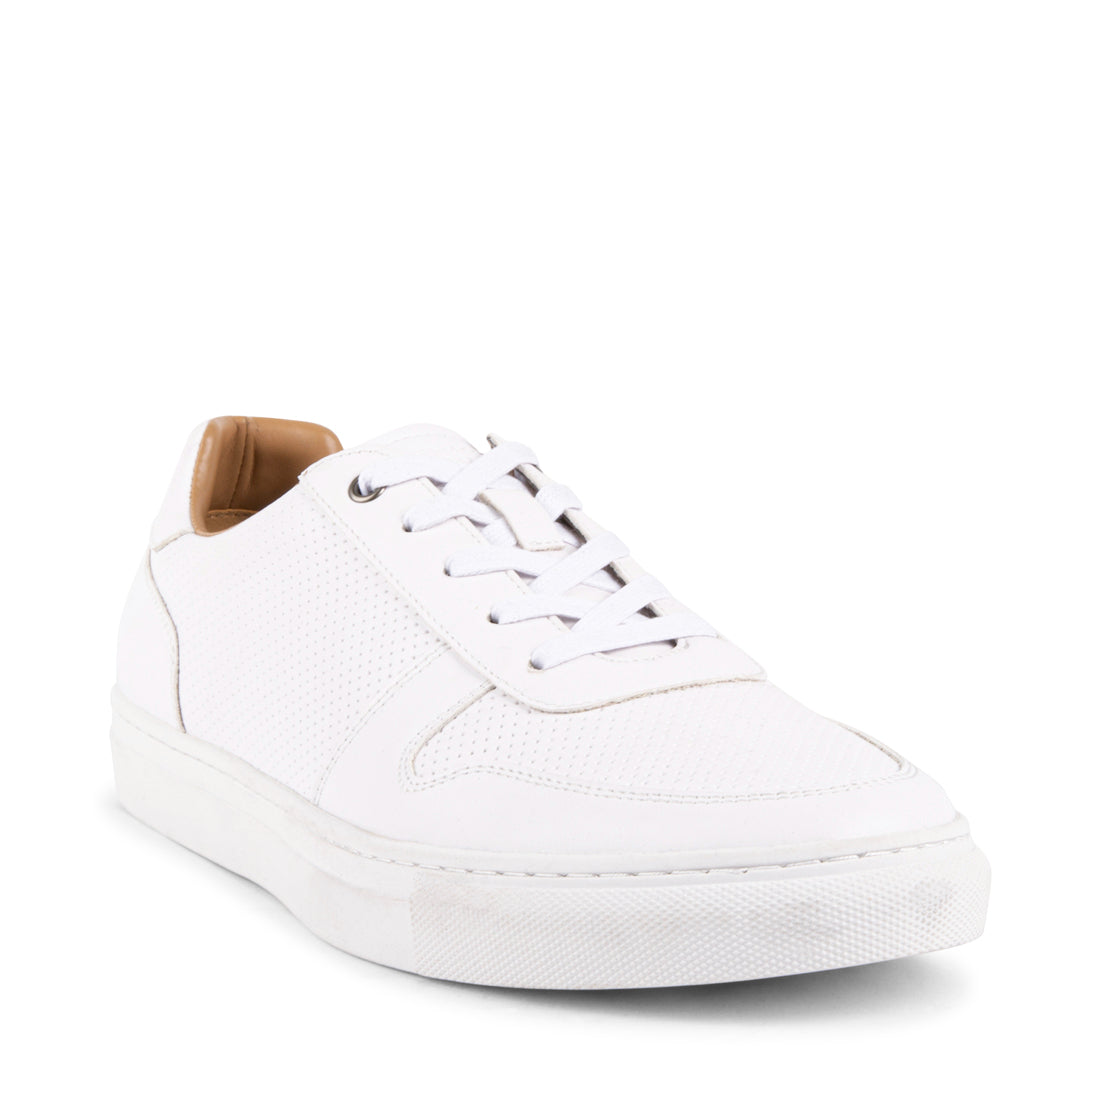 ARKHAMM White Men's Casual Shoes | Men's Designer Shoes – Steve Madden ...